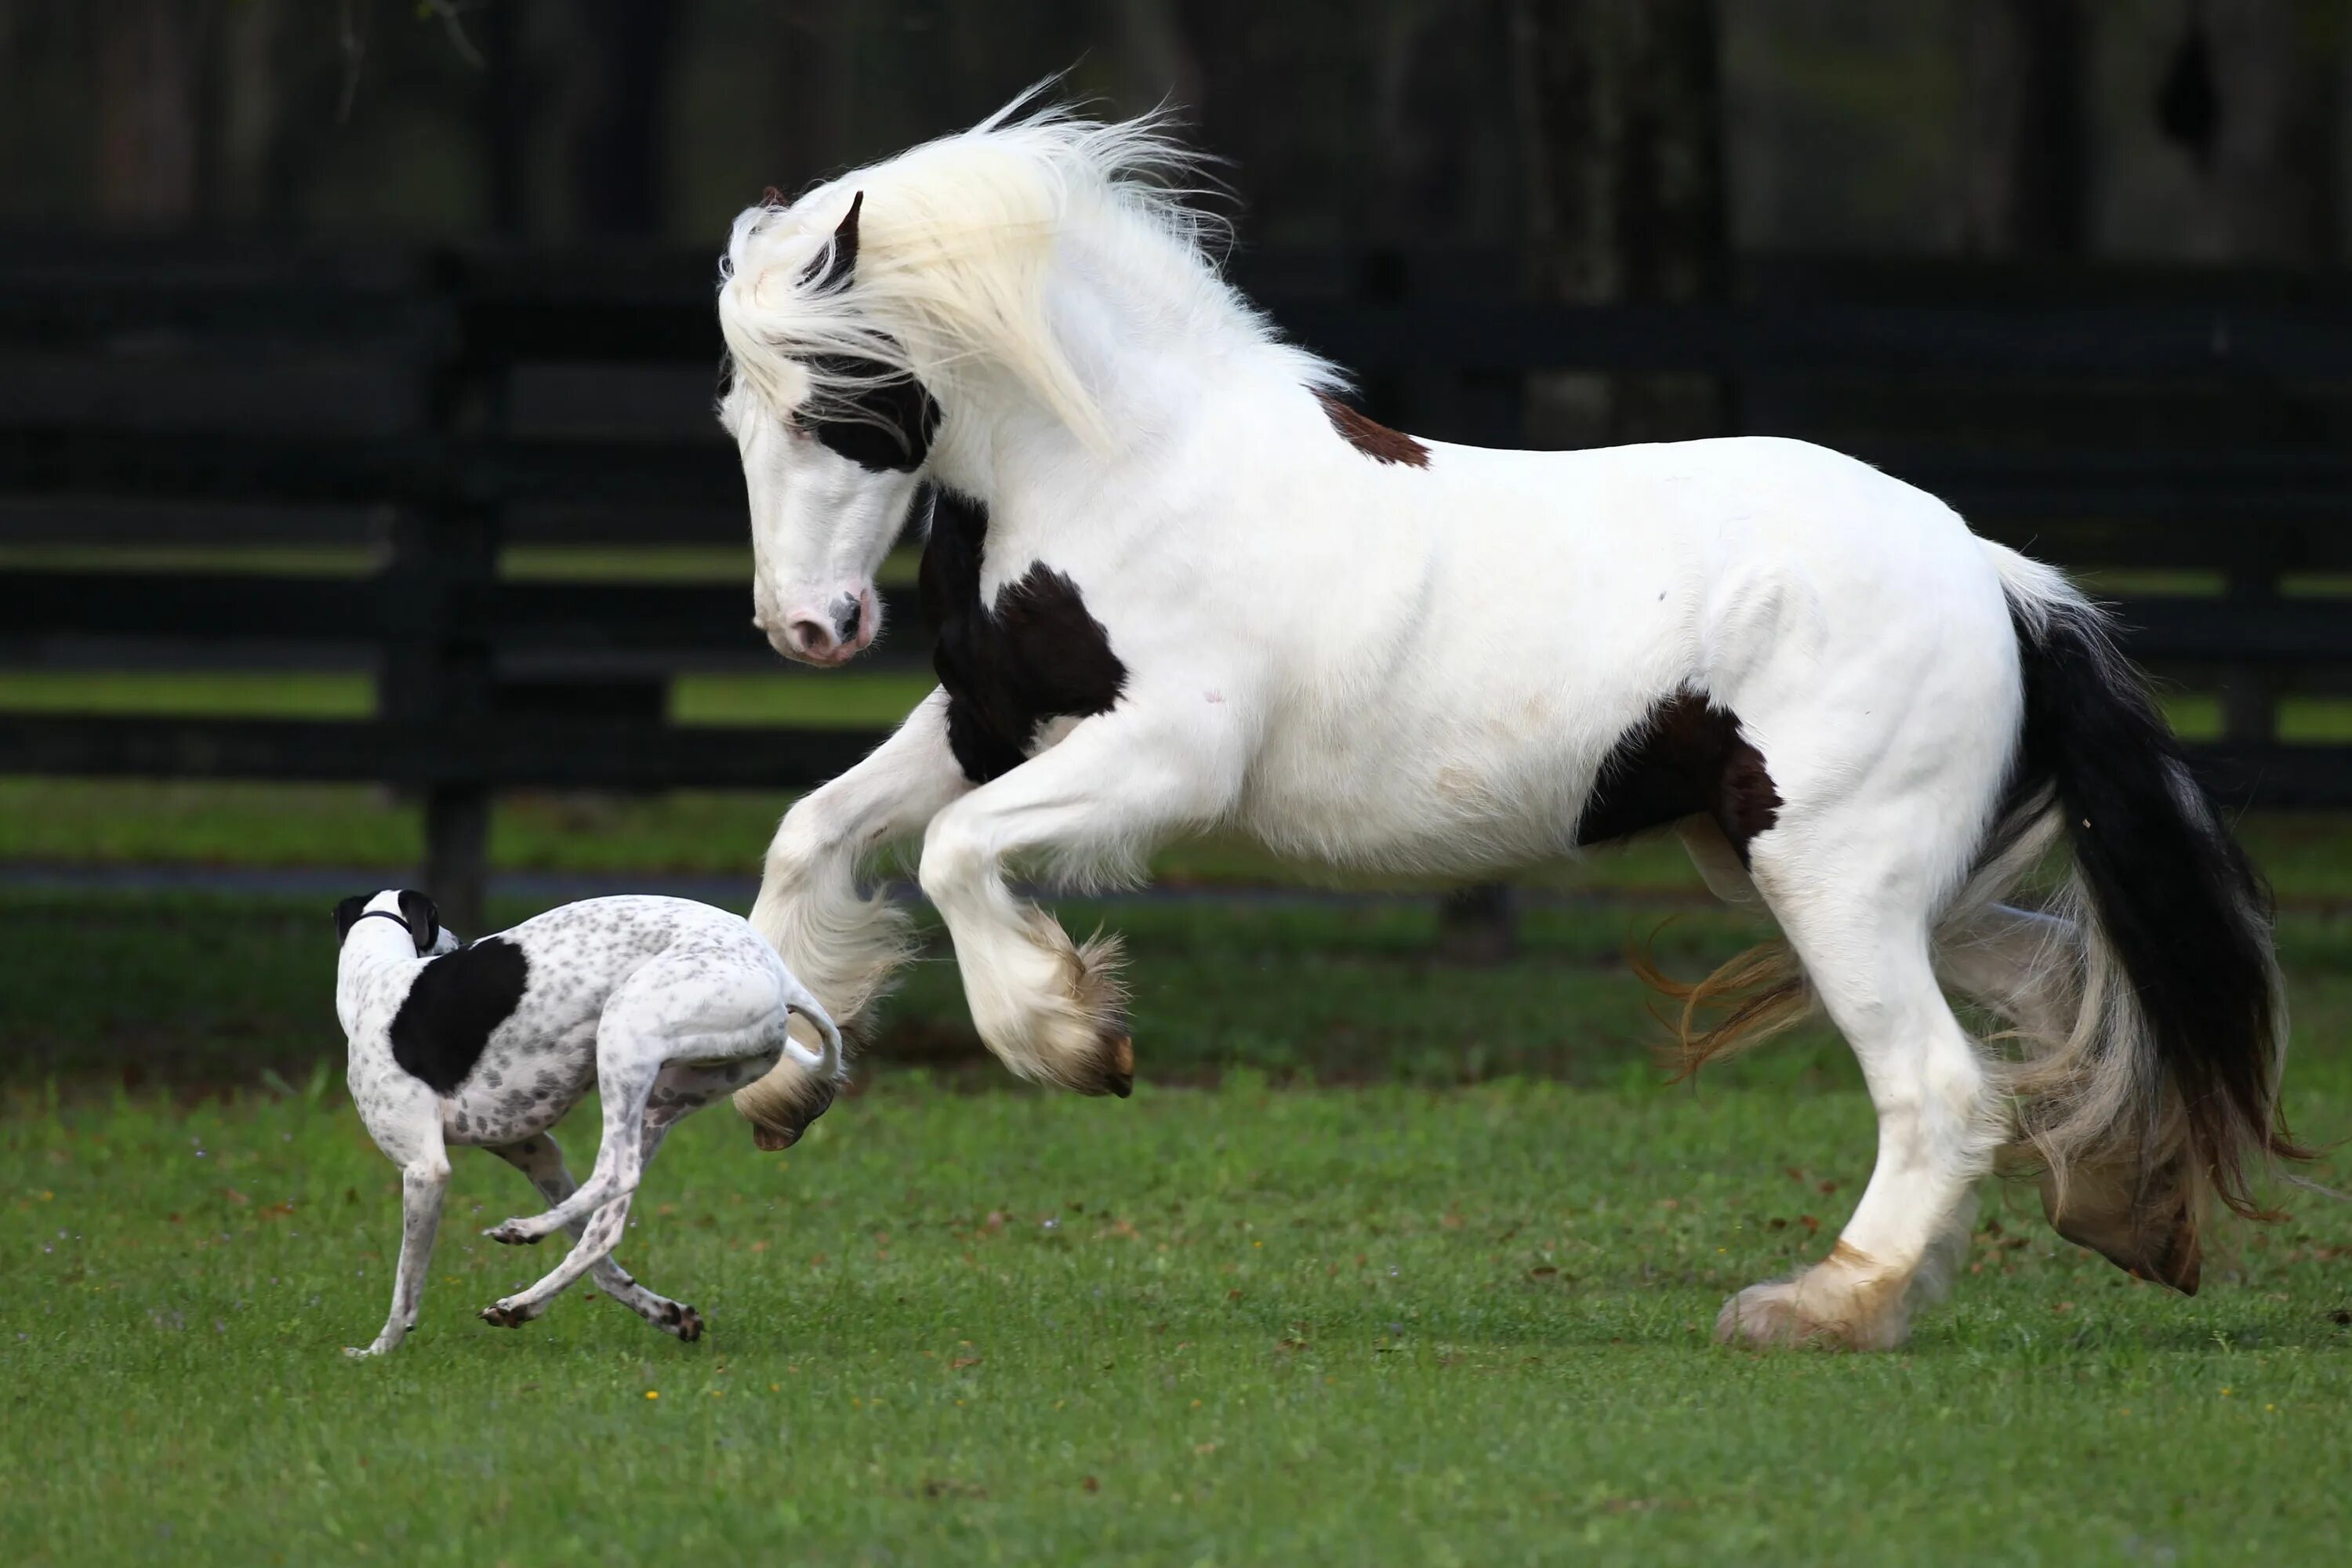 Animals brothers. Животные Близнецы. Лошади Близнецы. Красивые лошади Близнецы. Лошади которые похожи на собак.